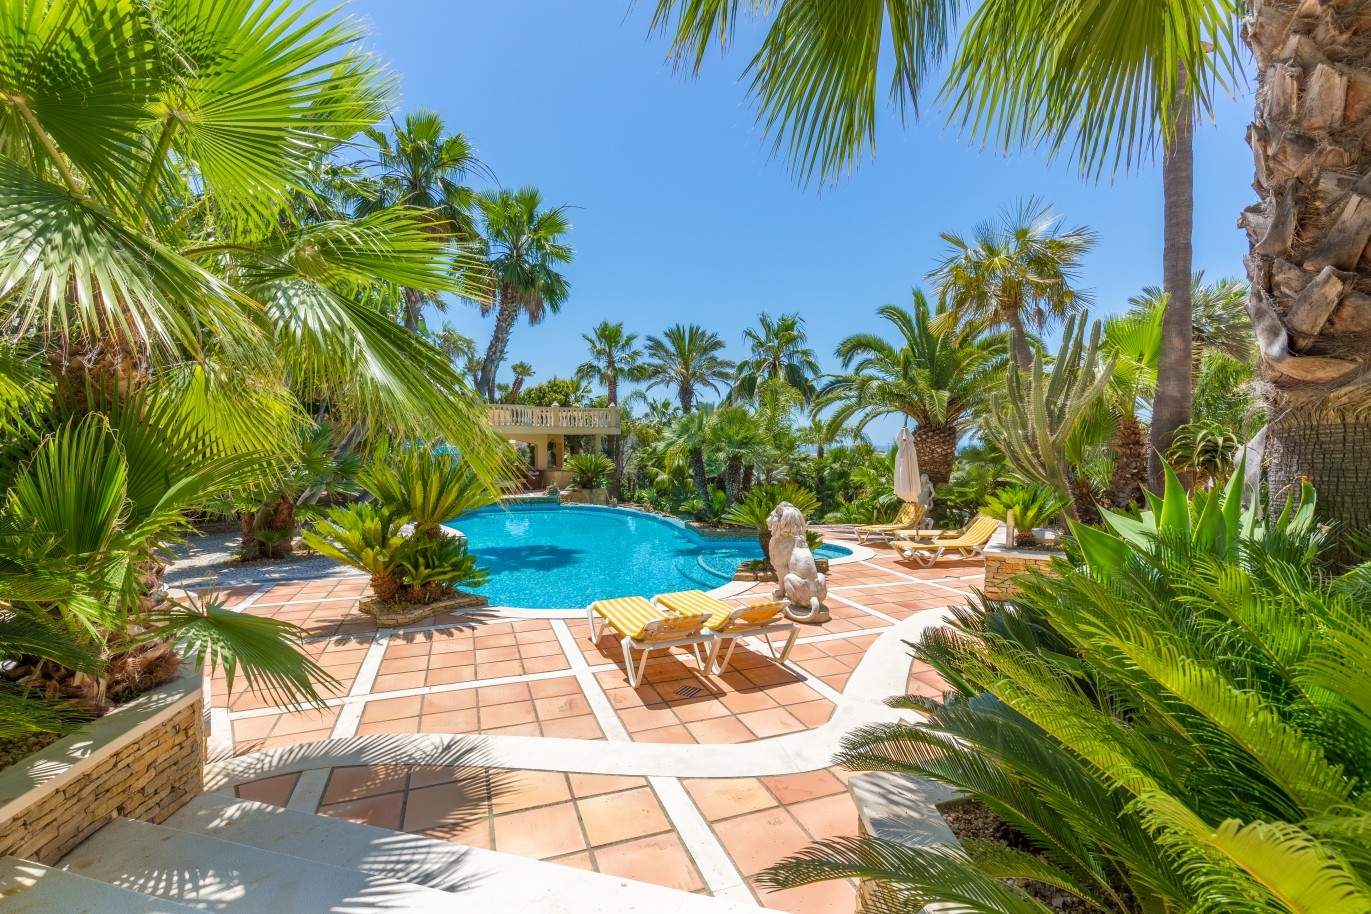 Piso en venta, piscina y pista de tenis, Albufeira, Algarve, Portugal_59650